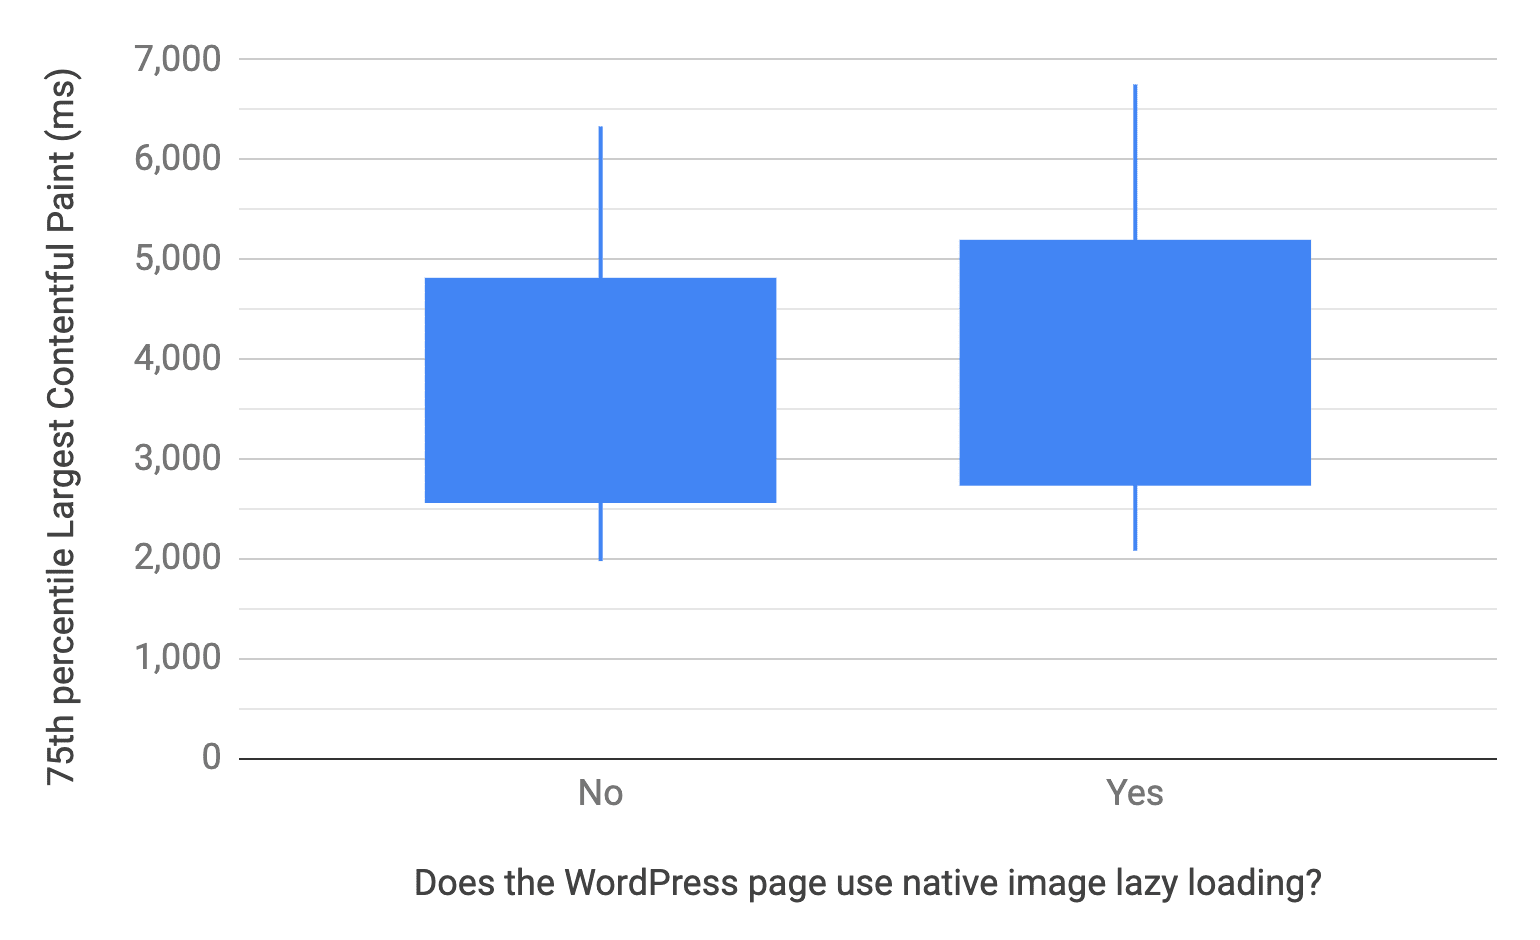 แผนภูมิ Box และ Whisker แสดงเปอร์เซ็นไทล์ที่ 10, 25, 75 และ 90 สำหรับหน้า WordPress ที่ใช้และไม่ใช้การโหลดรูปภาพแบบ Lazy Loading ระดับเบราว์เซอร์ ในการเปรียบเทียบ การกระจาย LCP ของหน้าเว็บที่ไม่ได้ใช้งานจะเร็วกว่าการแสดงหน้าเว็บดังกล่าว ซึ่งคล้ายกับแผนภูมิก่อนหน้านี้